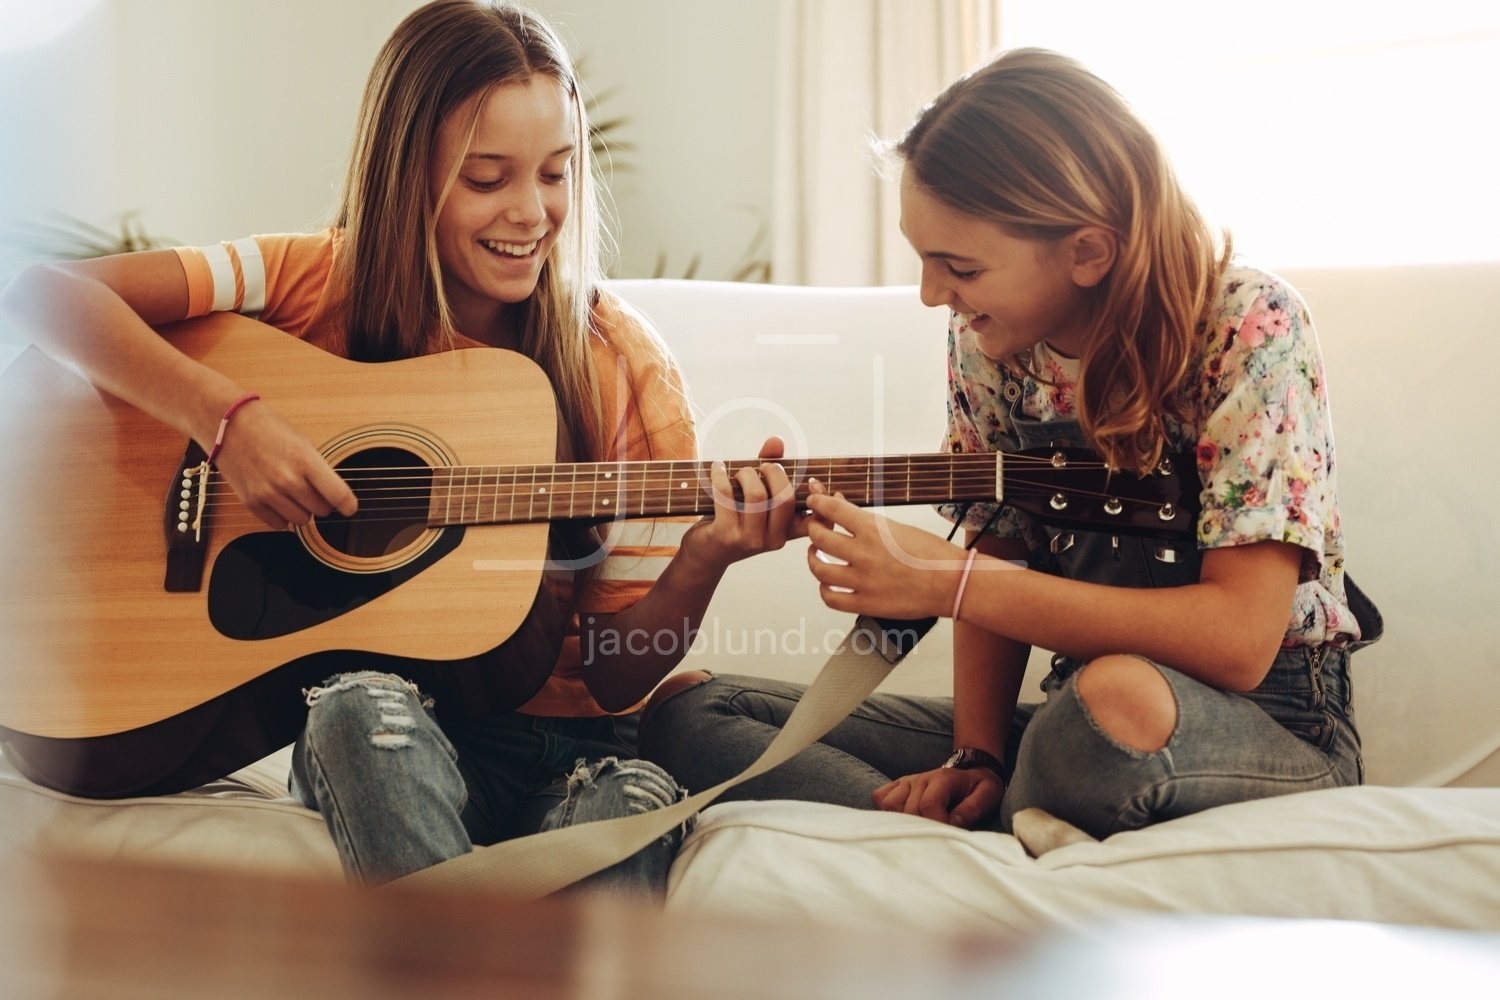 He can play guitar. Подросток с гитарой. Подруги с гитарами. Люди играющие на гитаре. Гитара для детей.